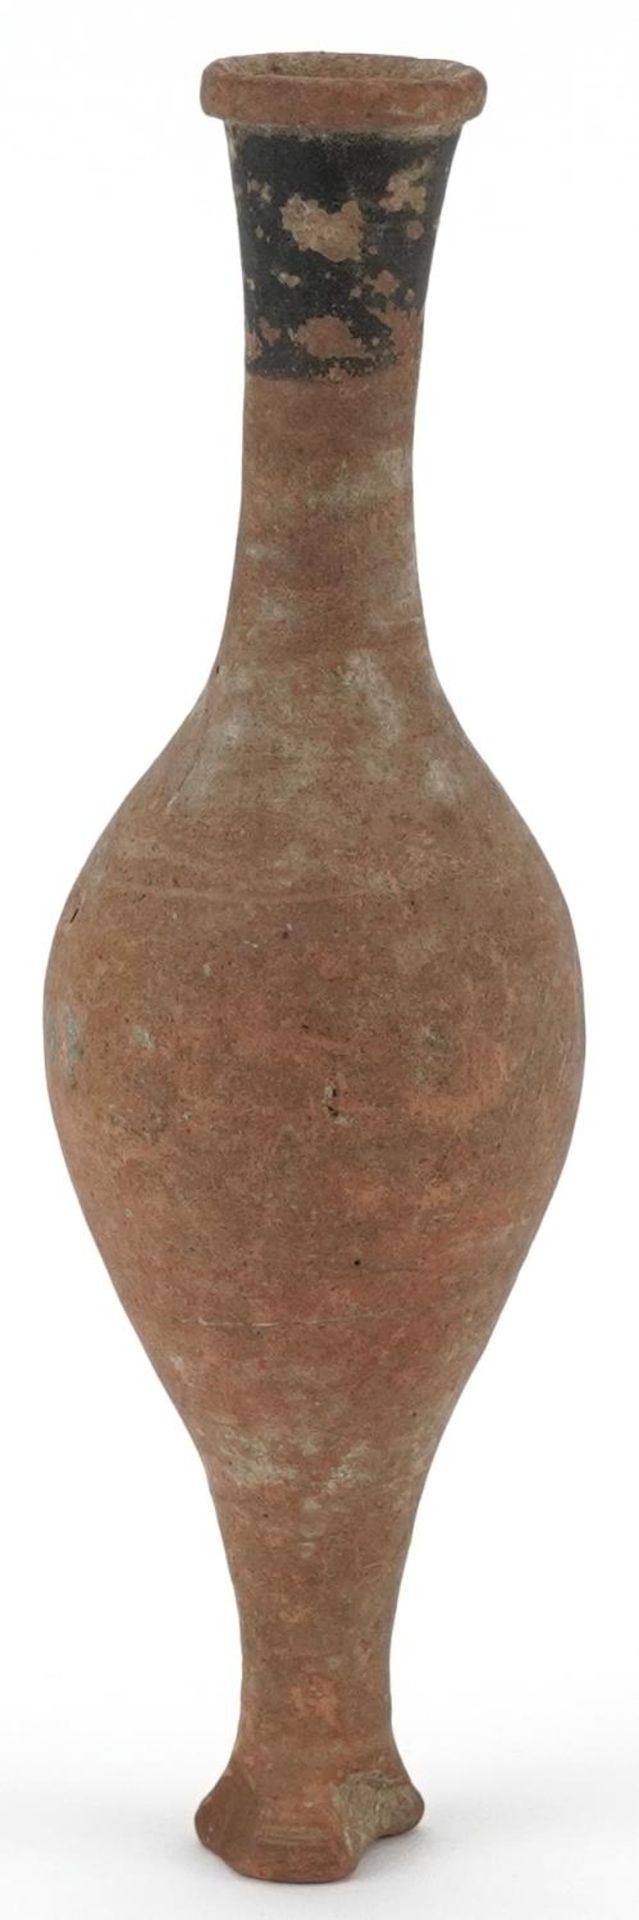 Antique terracotta fusiform unguentarium, possibly Roman, 18cm high - Image 2 of 4